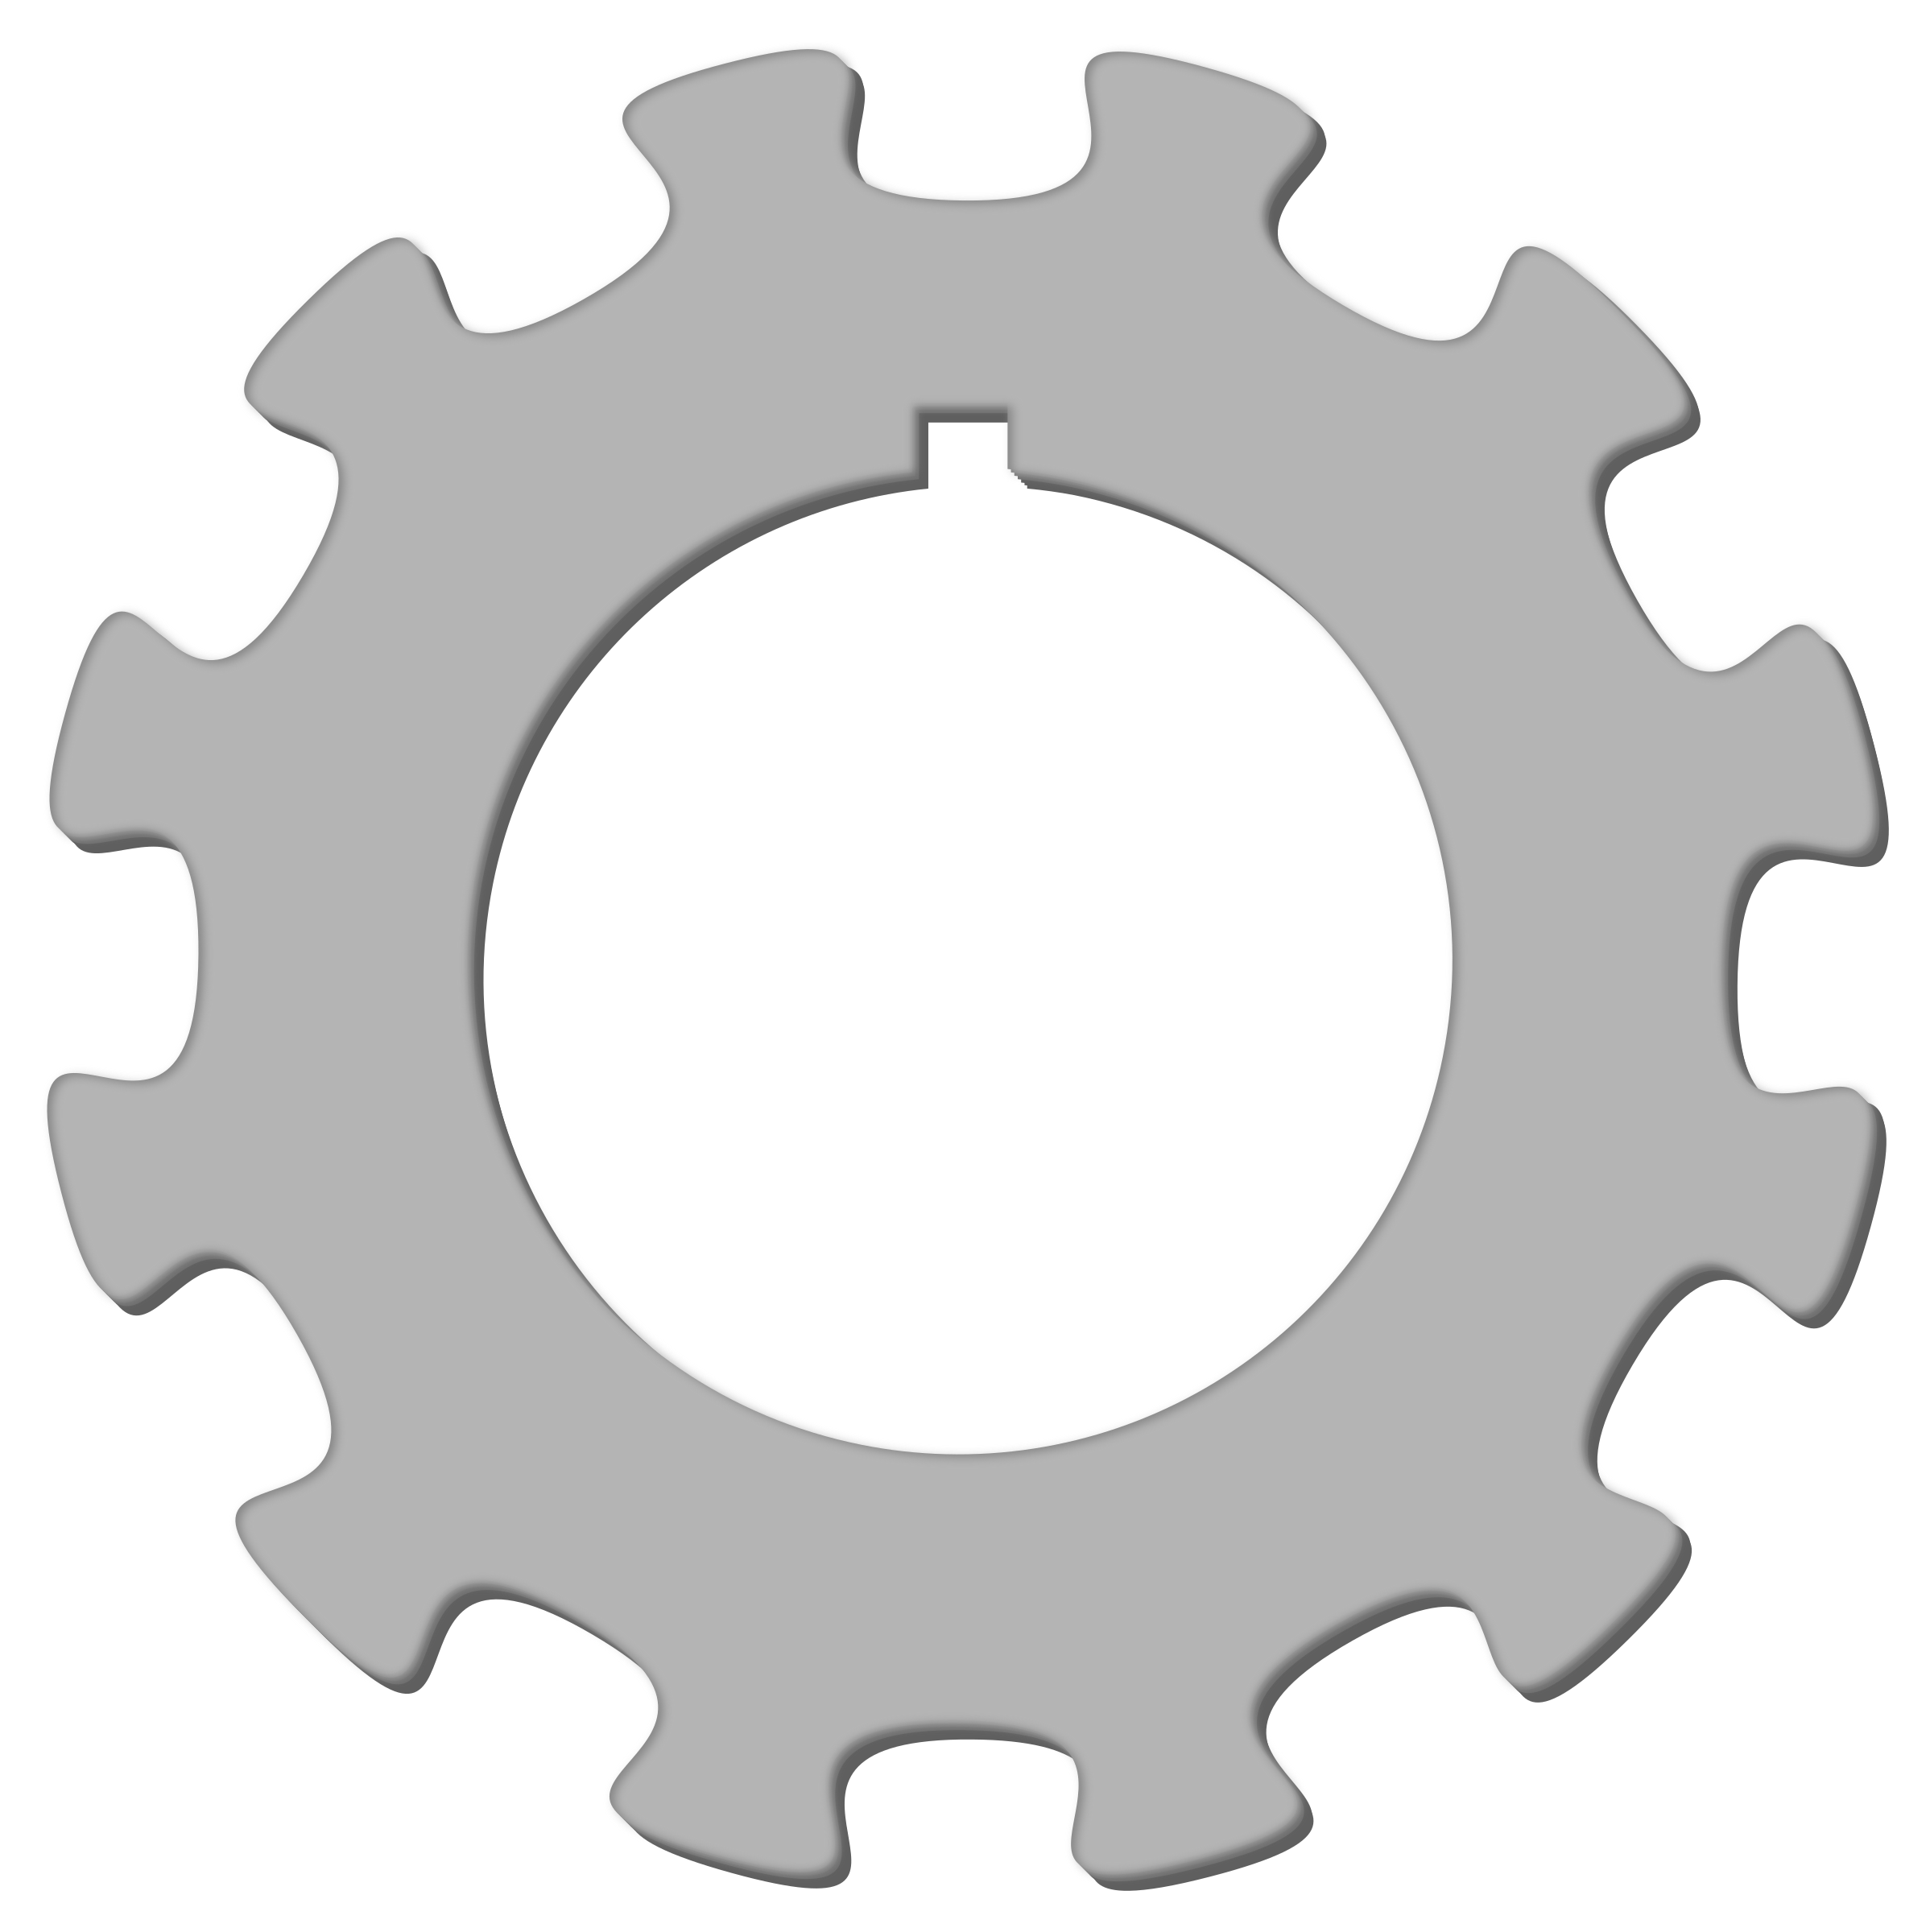 Clipart gear wheel - ClipartFox